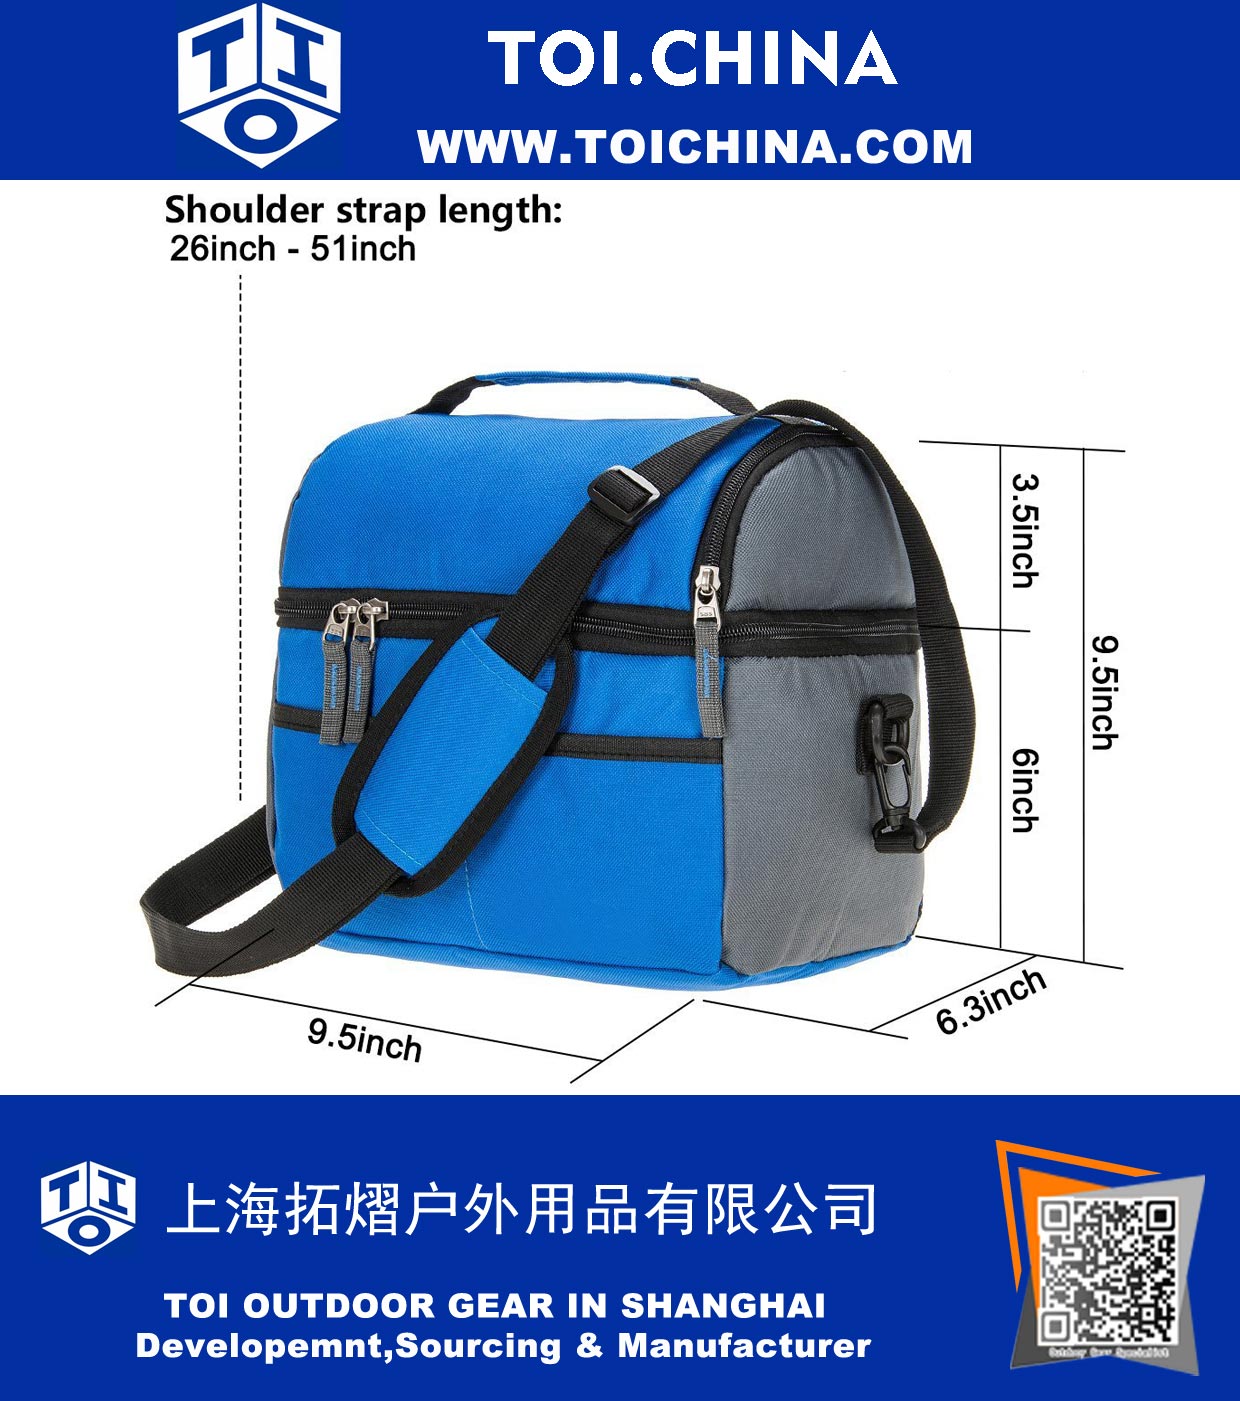 8 Can Cooler Bag Двойной изолированный отсек Lunch Bag Высокоплотная изоляция с прочными герметичными вкладышами, многими карманами, сильной застежкой-молнией и сшиванием